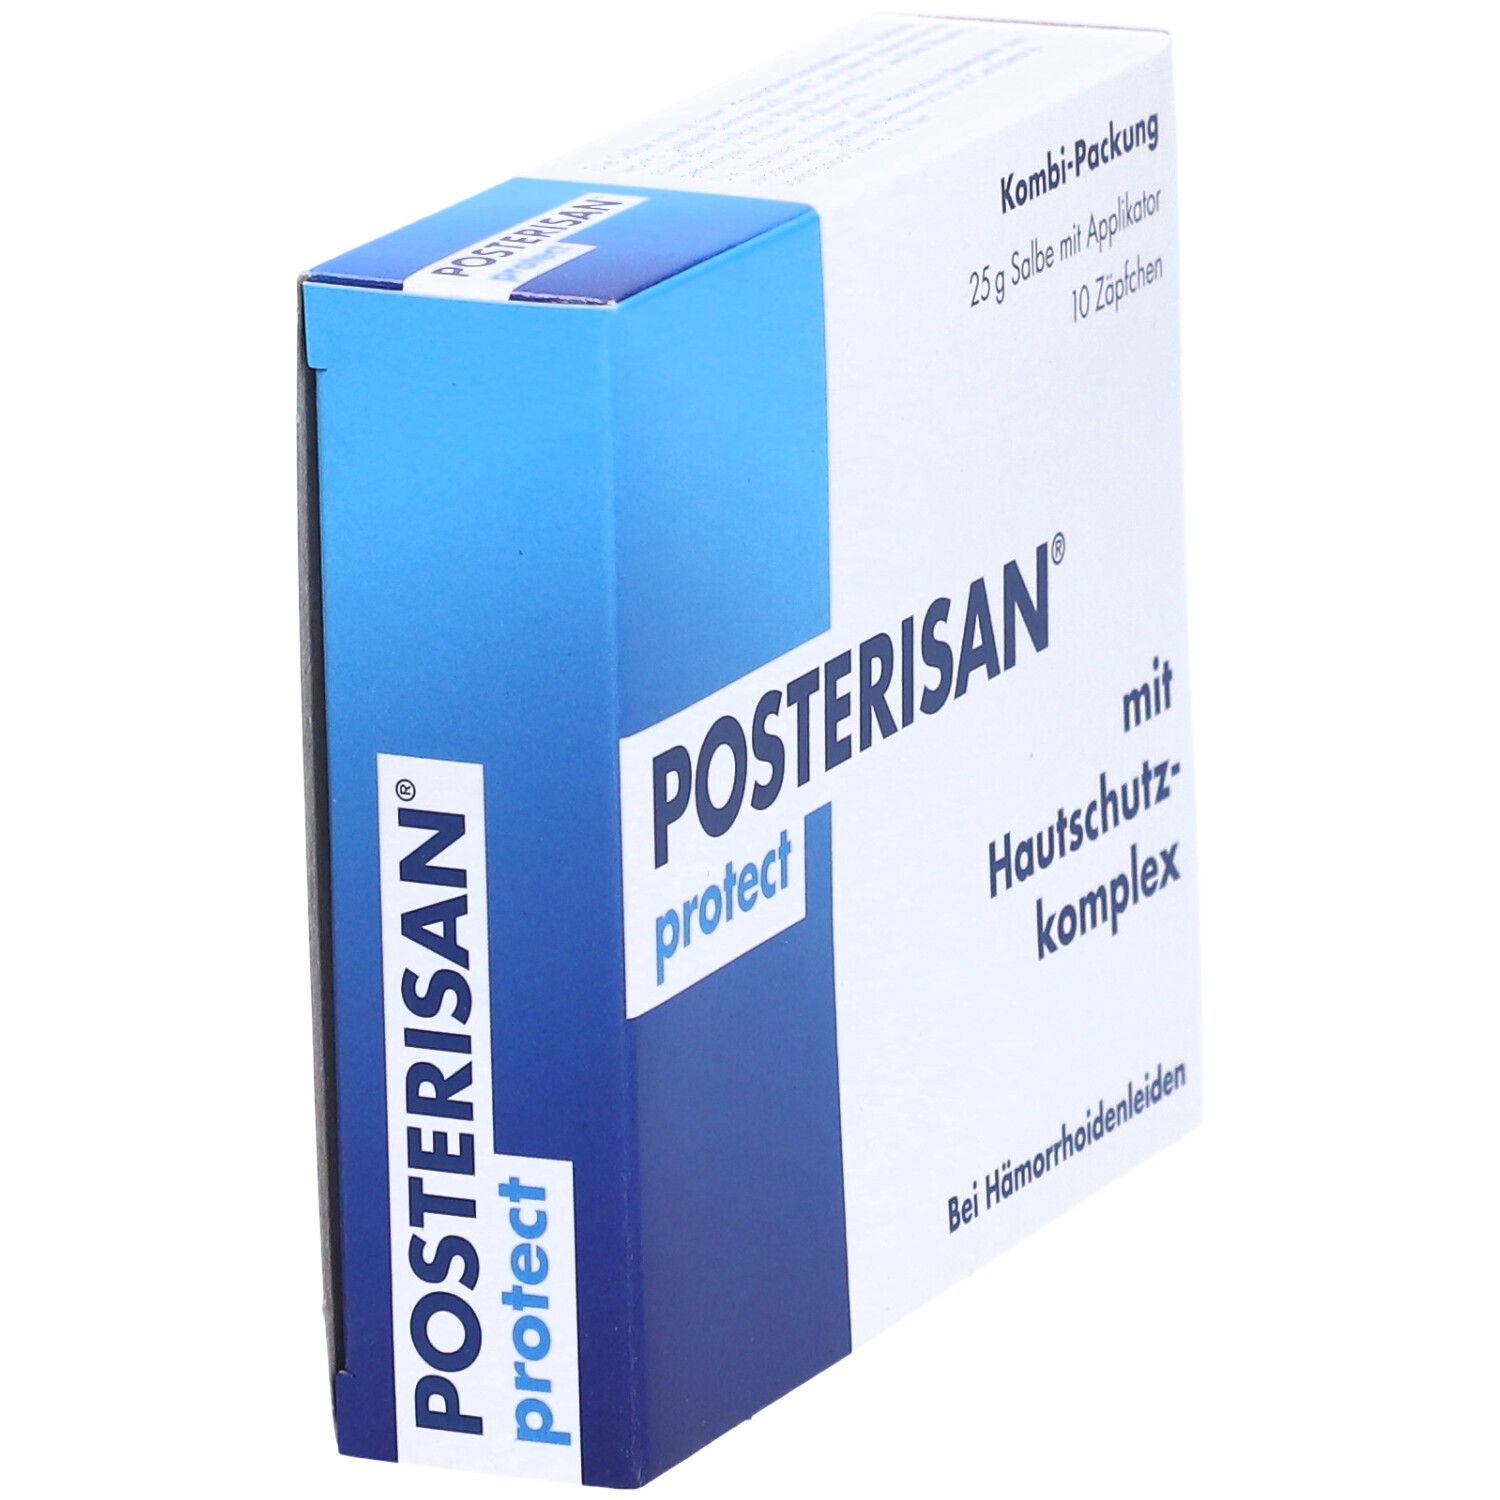 Posterisan® protect Kombipackung